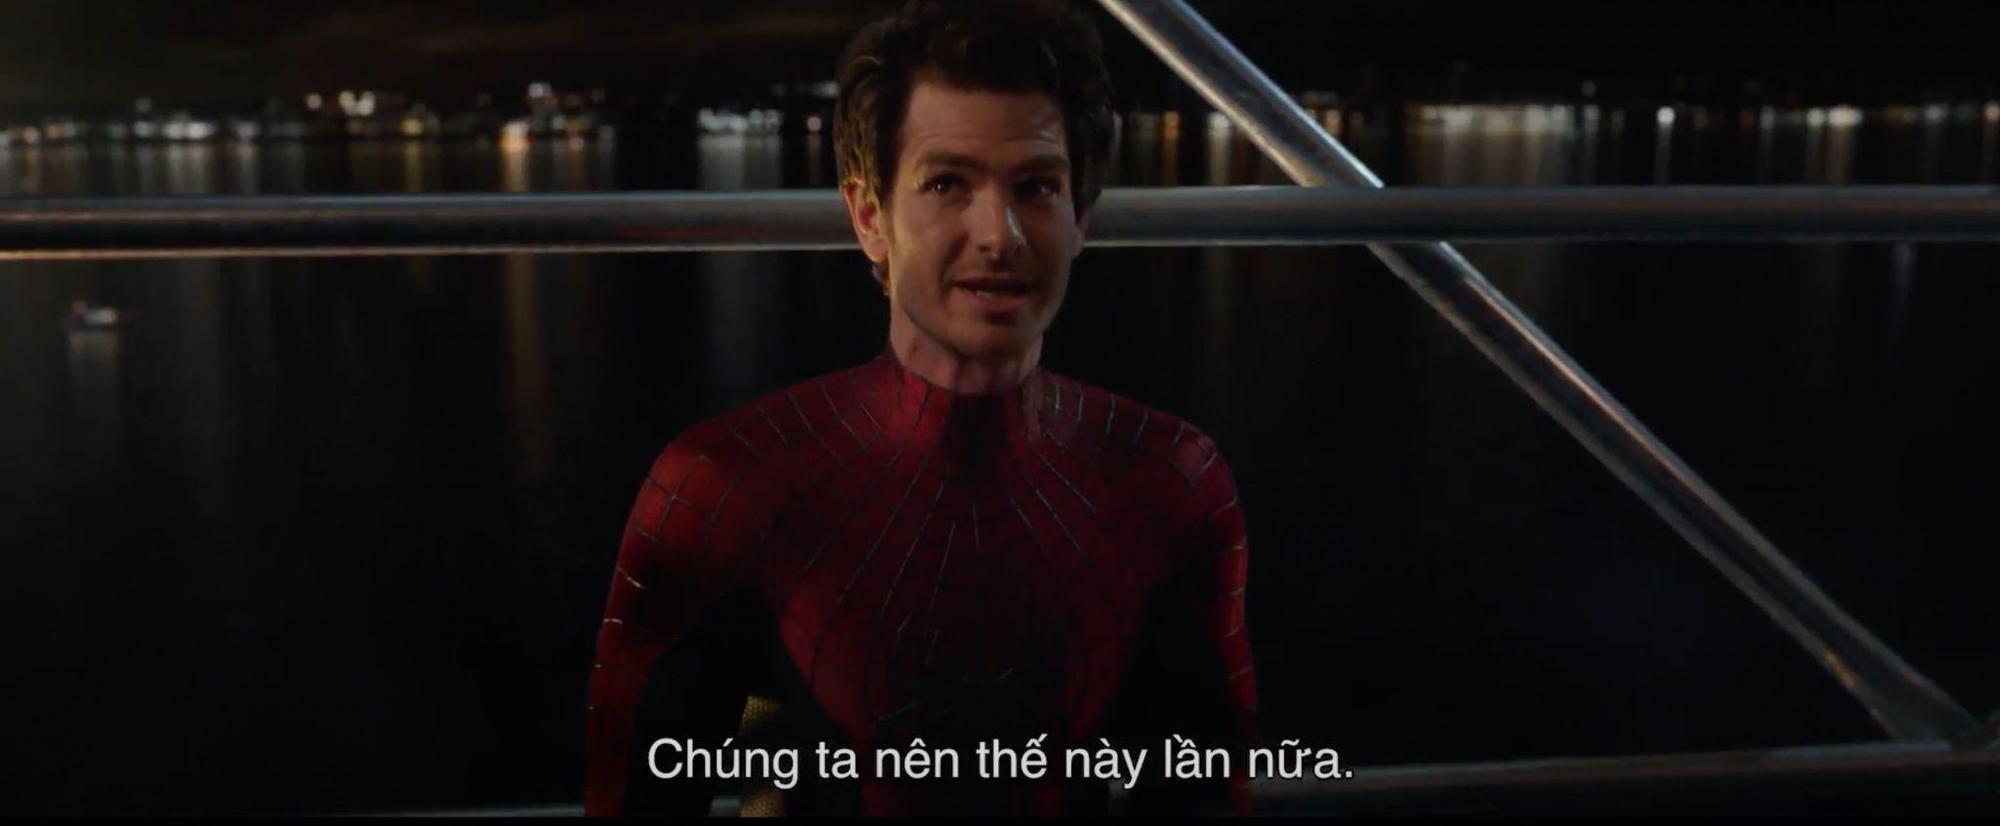 Bom tấn ăn khách năm 2021 - Spider-Man: No Way Home trở lại với phiên bản nhiều điều thú vị hơn dịp lễ 2/9 - Ảnh 5.